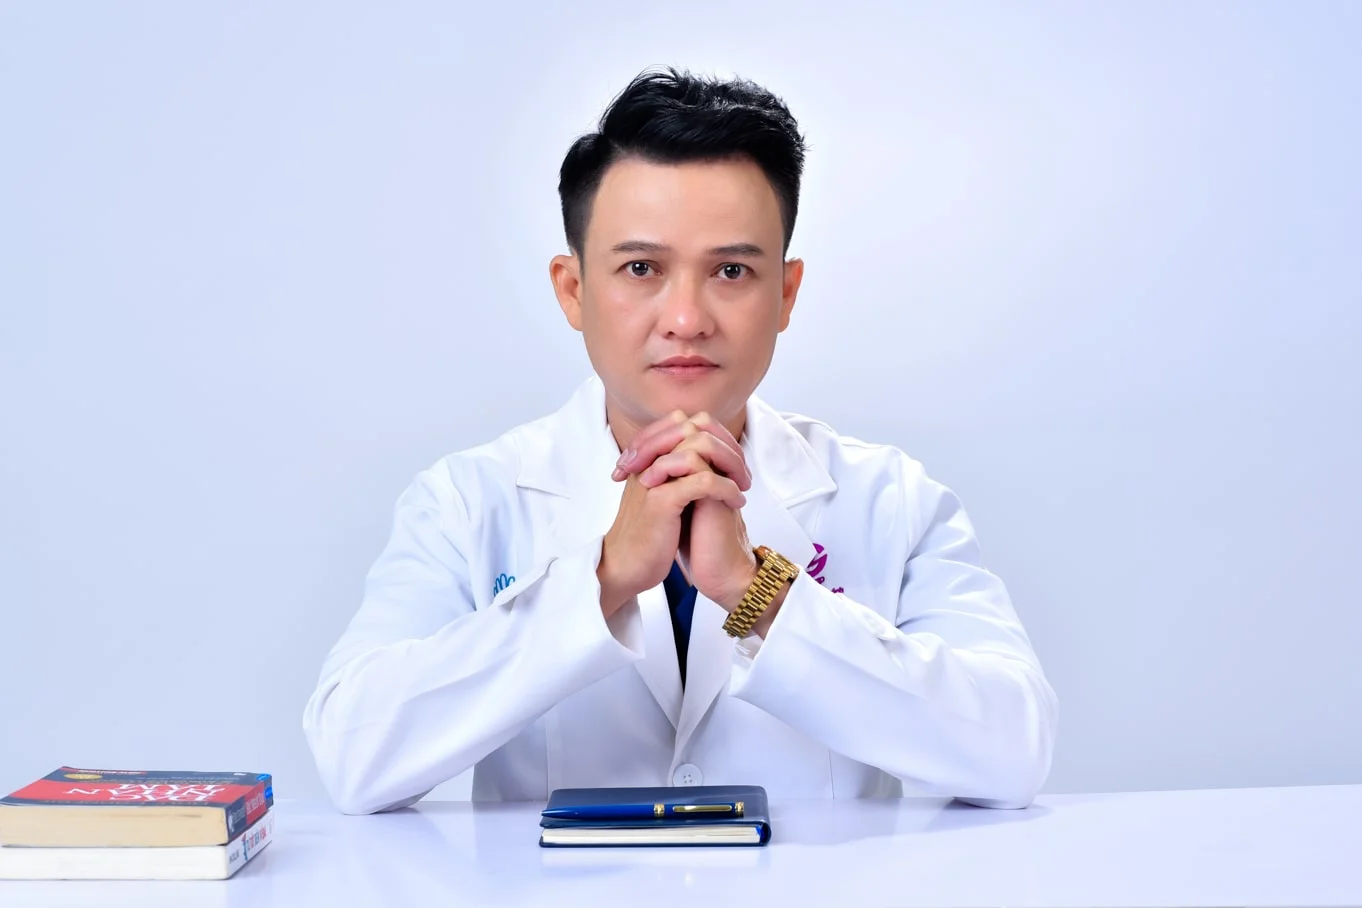 Anh bac si 6 min - Concept chụp ảnh bác sĩ với áo Blouse đẹp chỉnh chu - HThao Studio